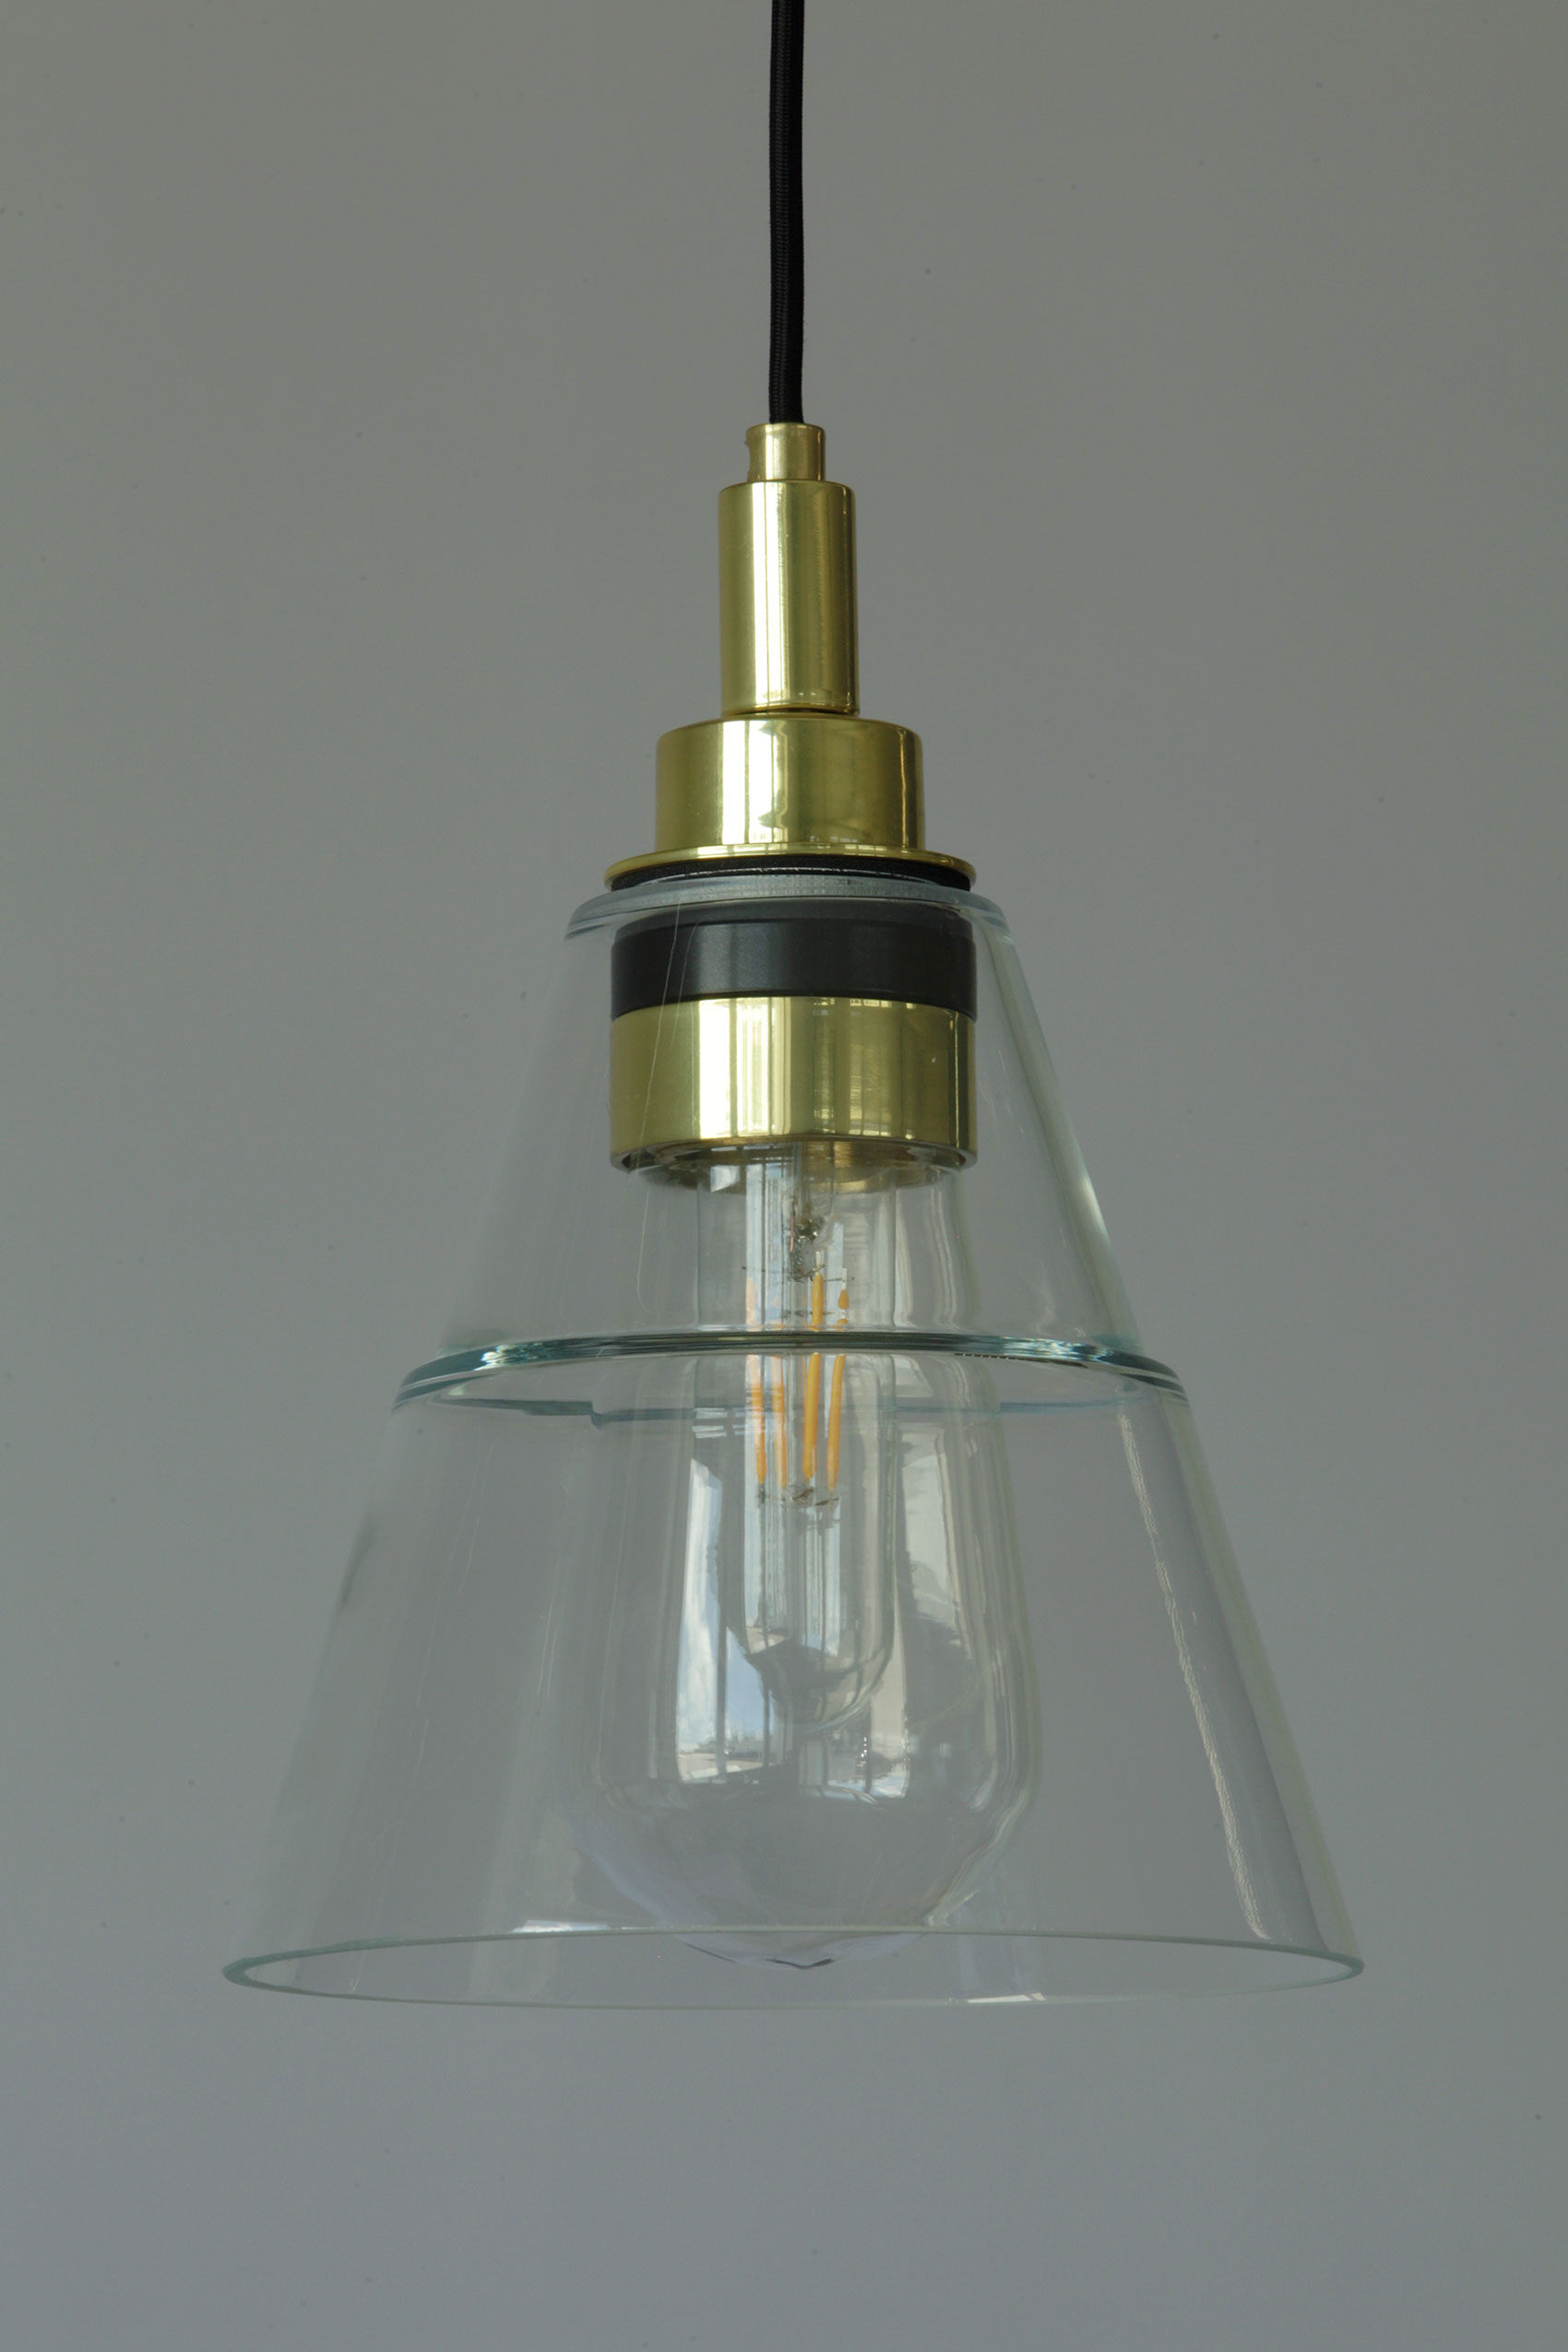 Kleine Glas-Hängeleuchte auch für Badezimmer, IP65: Wasserfeste Pendelleuchte, z. B. auch für Bäder etcc.